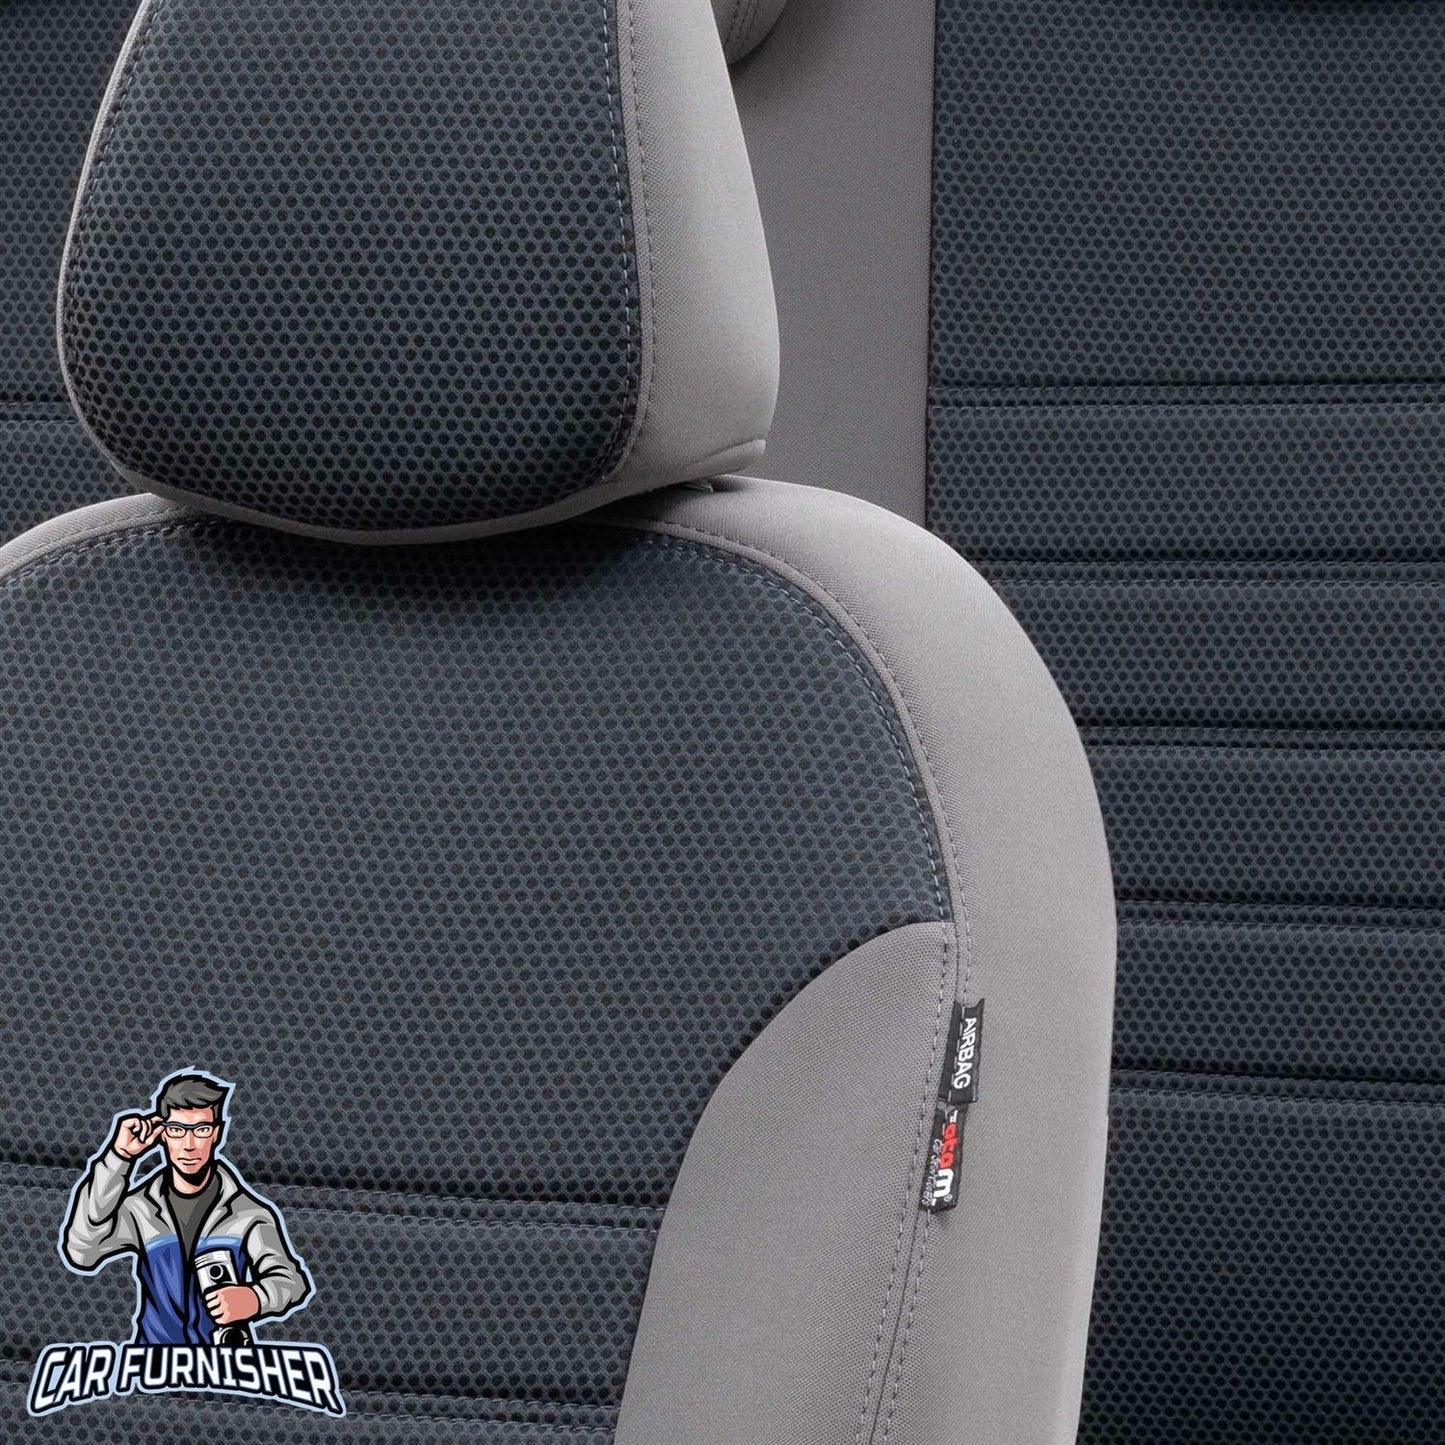 Suzuki Jimny Seat Covers Original Jacquard Design Smoked Jacquard Fabric